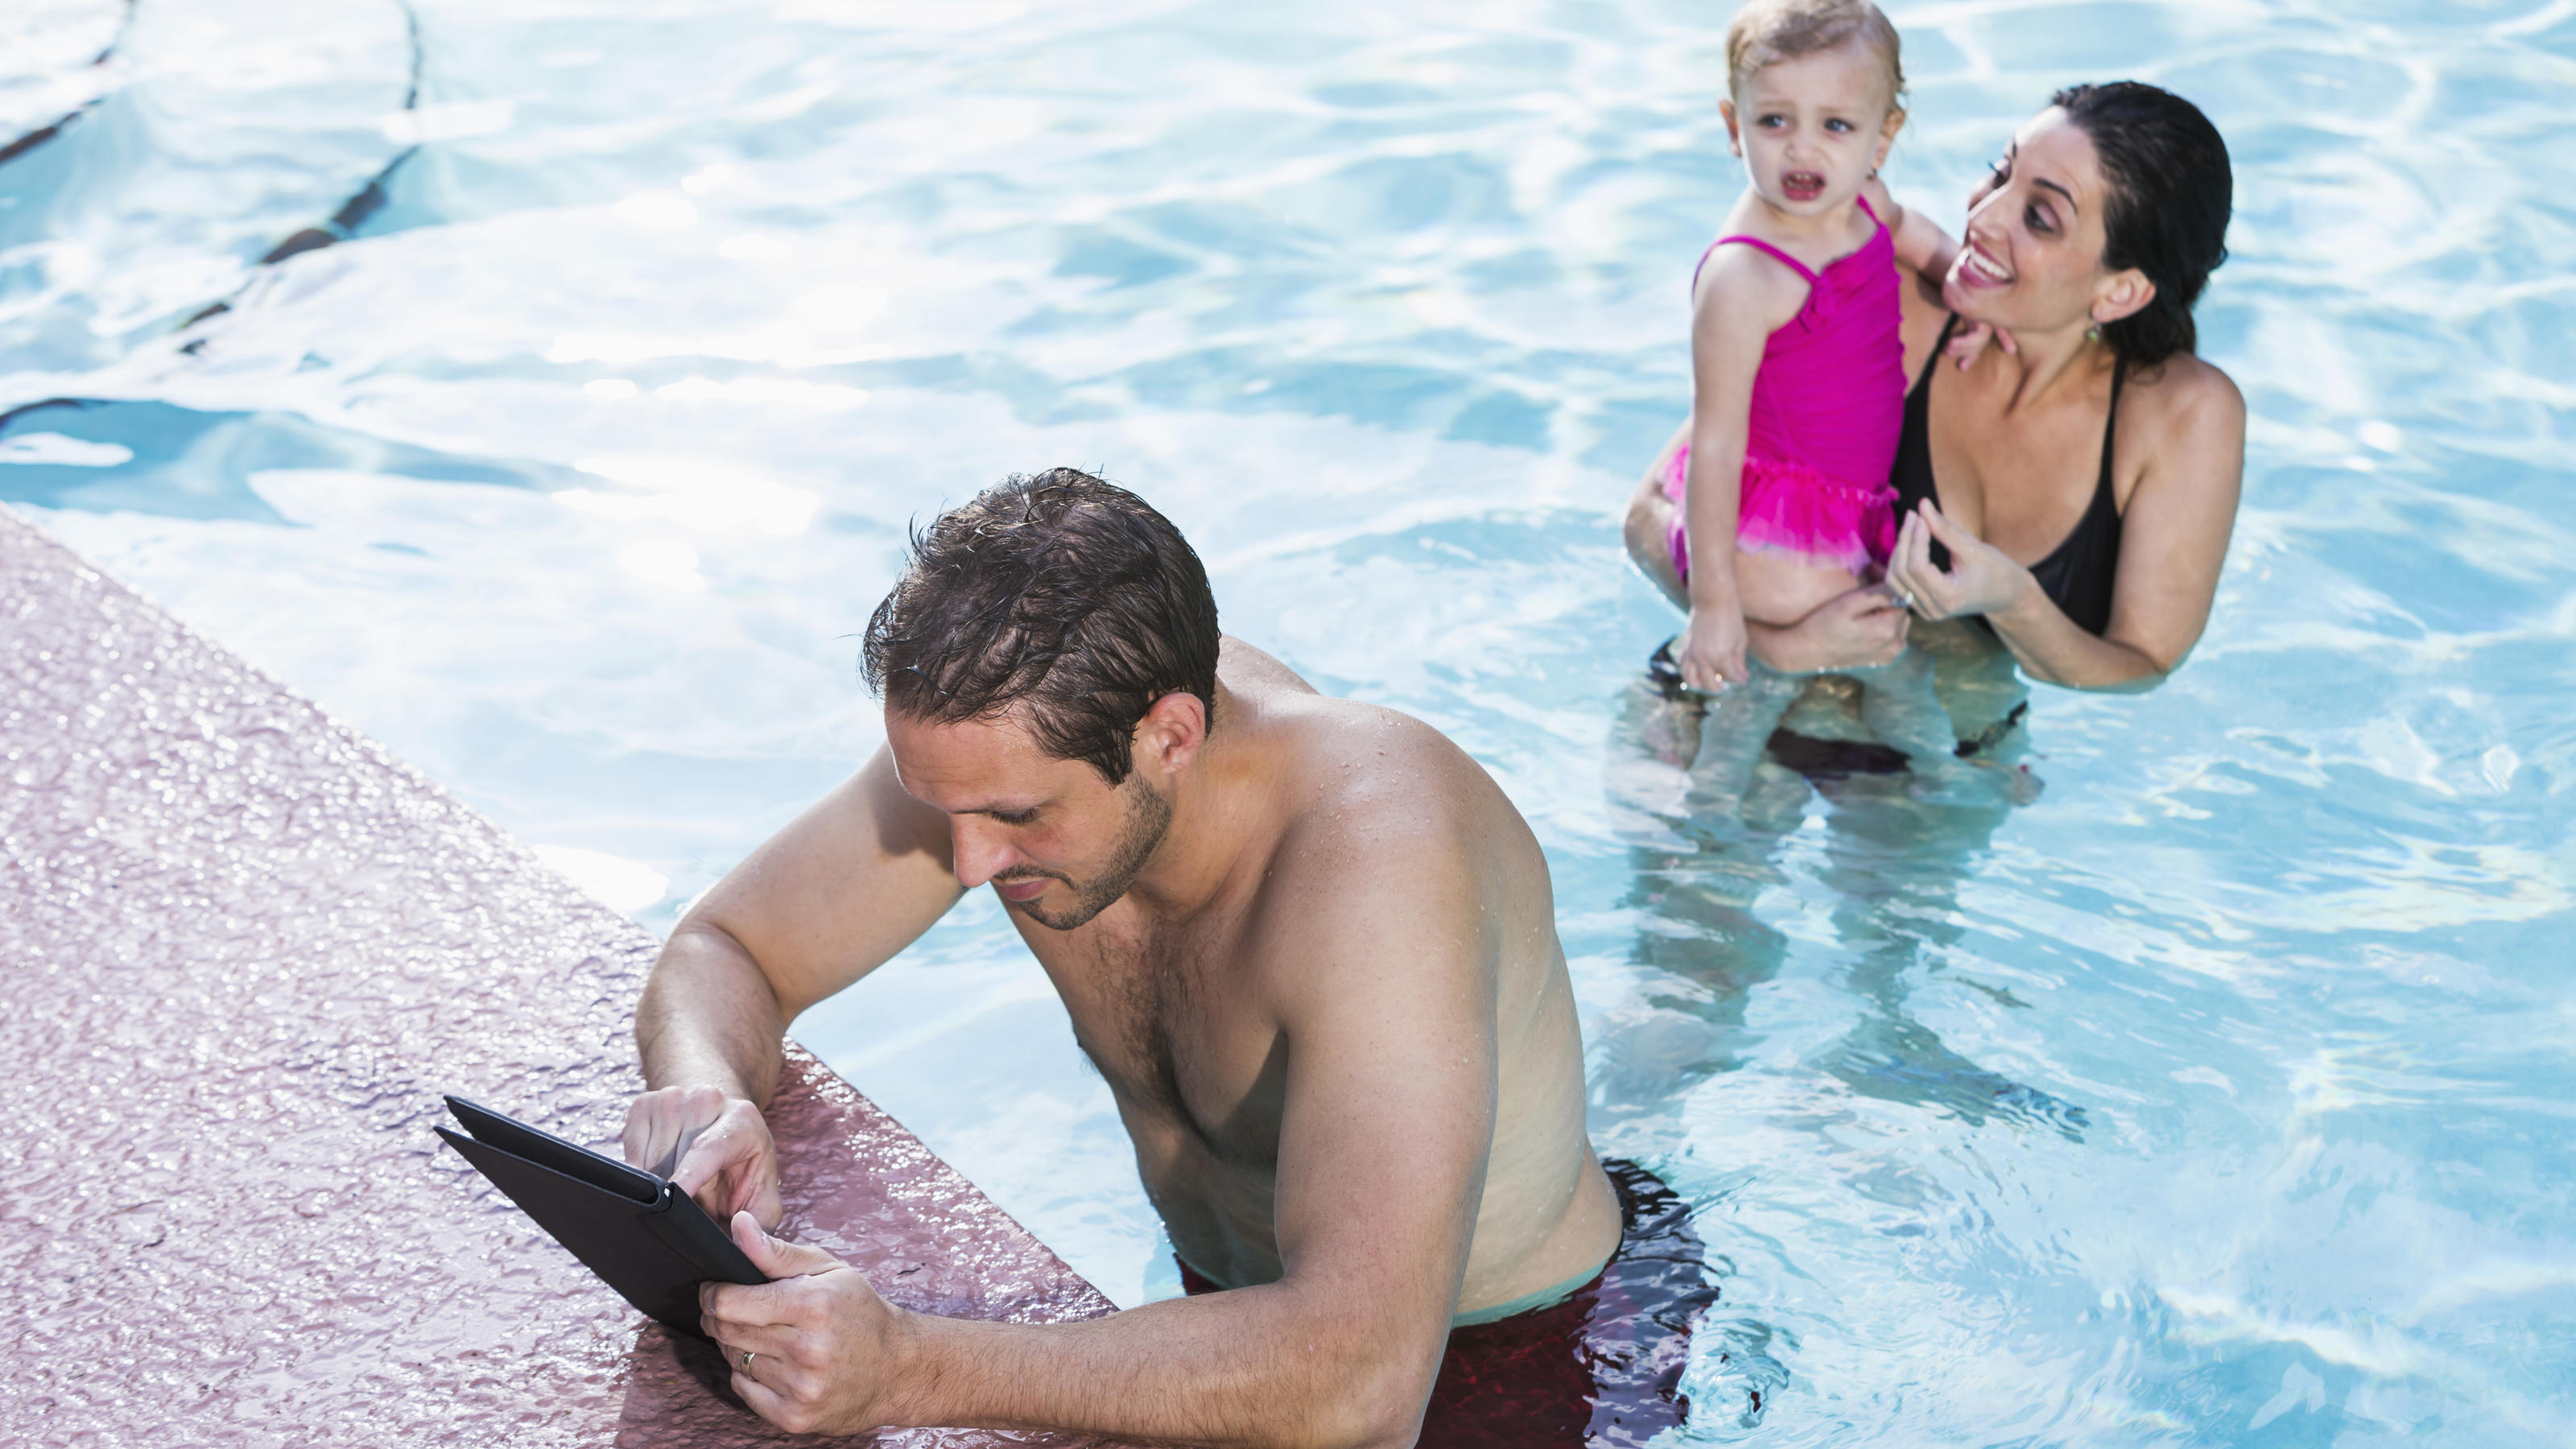 Ein Mann hängt im Schwimmbad am Beckenrand und schaut auf sein iPad, im Hintergrund sieht man eine Frau mit Kind.